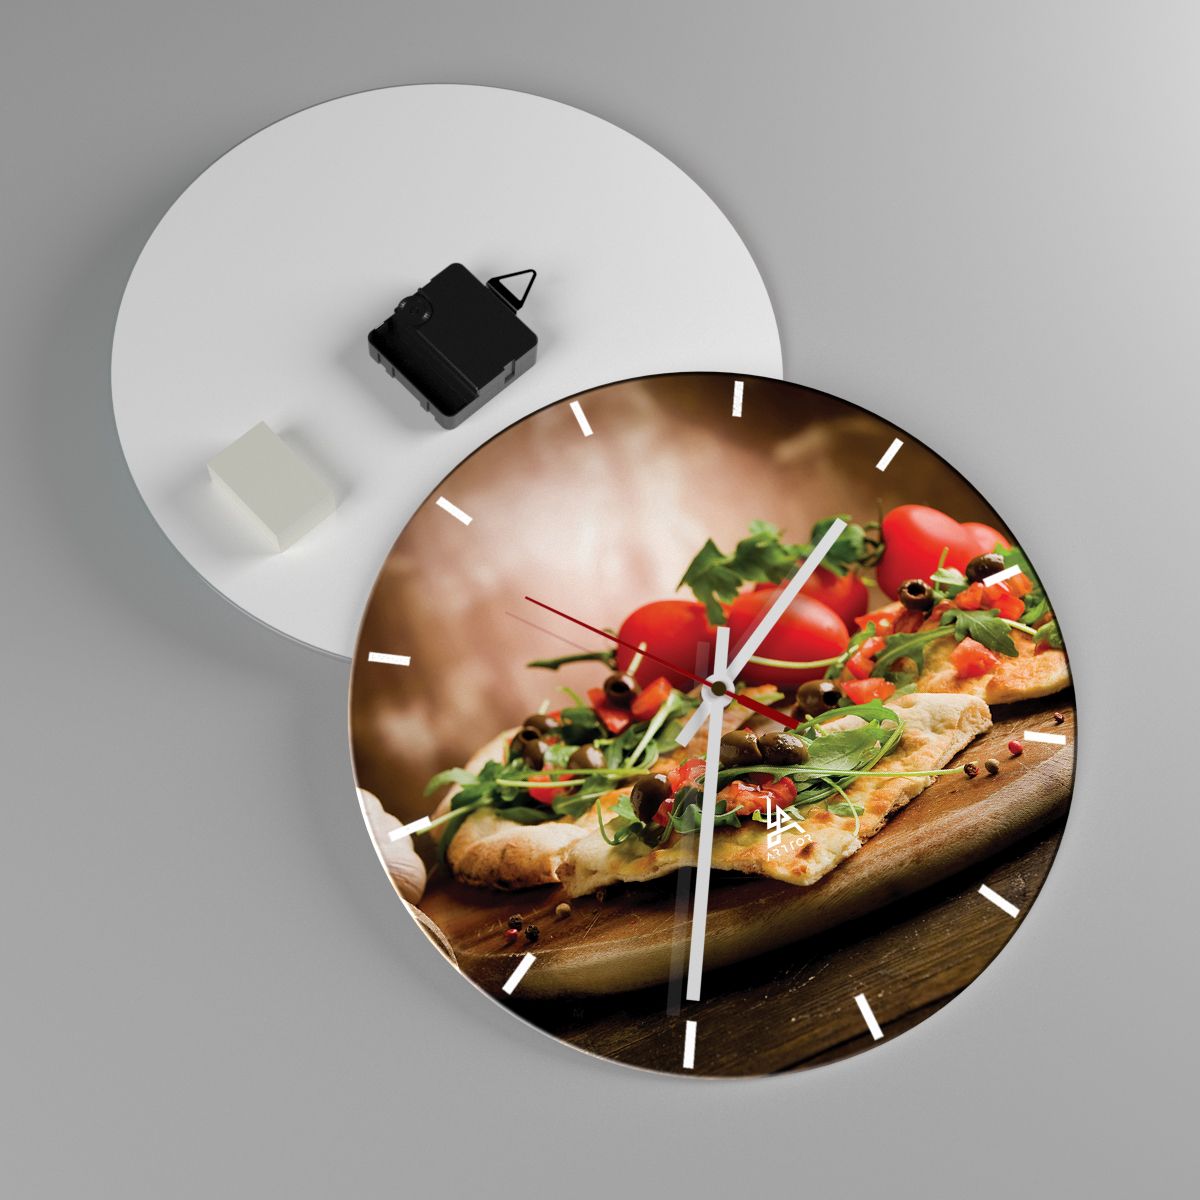 Nástenné hodiny Gastronómia, Nástenné hodiny Pizza, Nástenné hodiny Taliansko, Nástenné hodiny Kuchyňa, Nástenné hodiny Paradajky